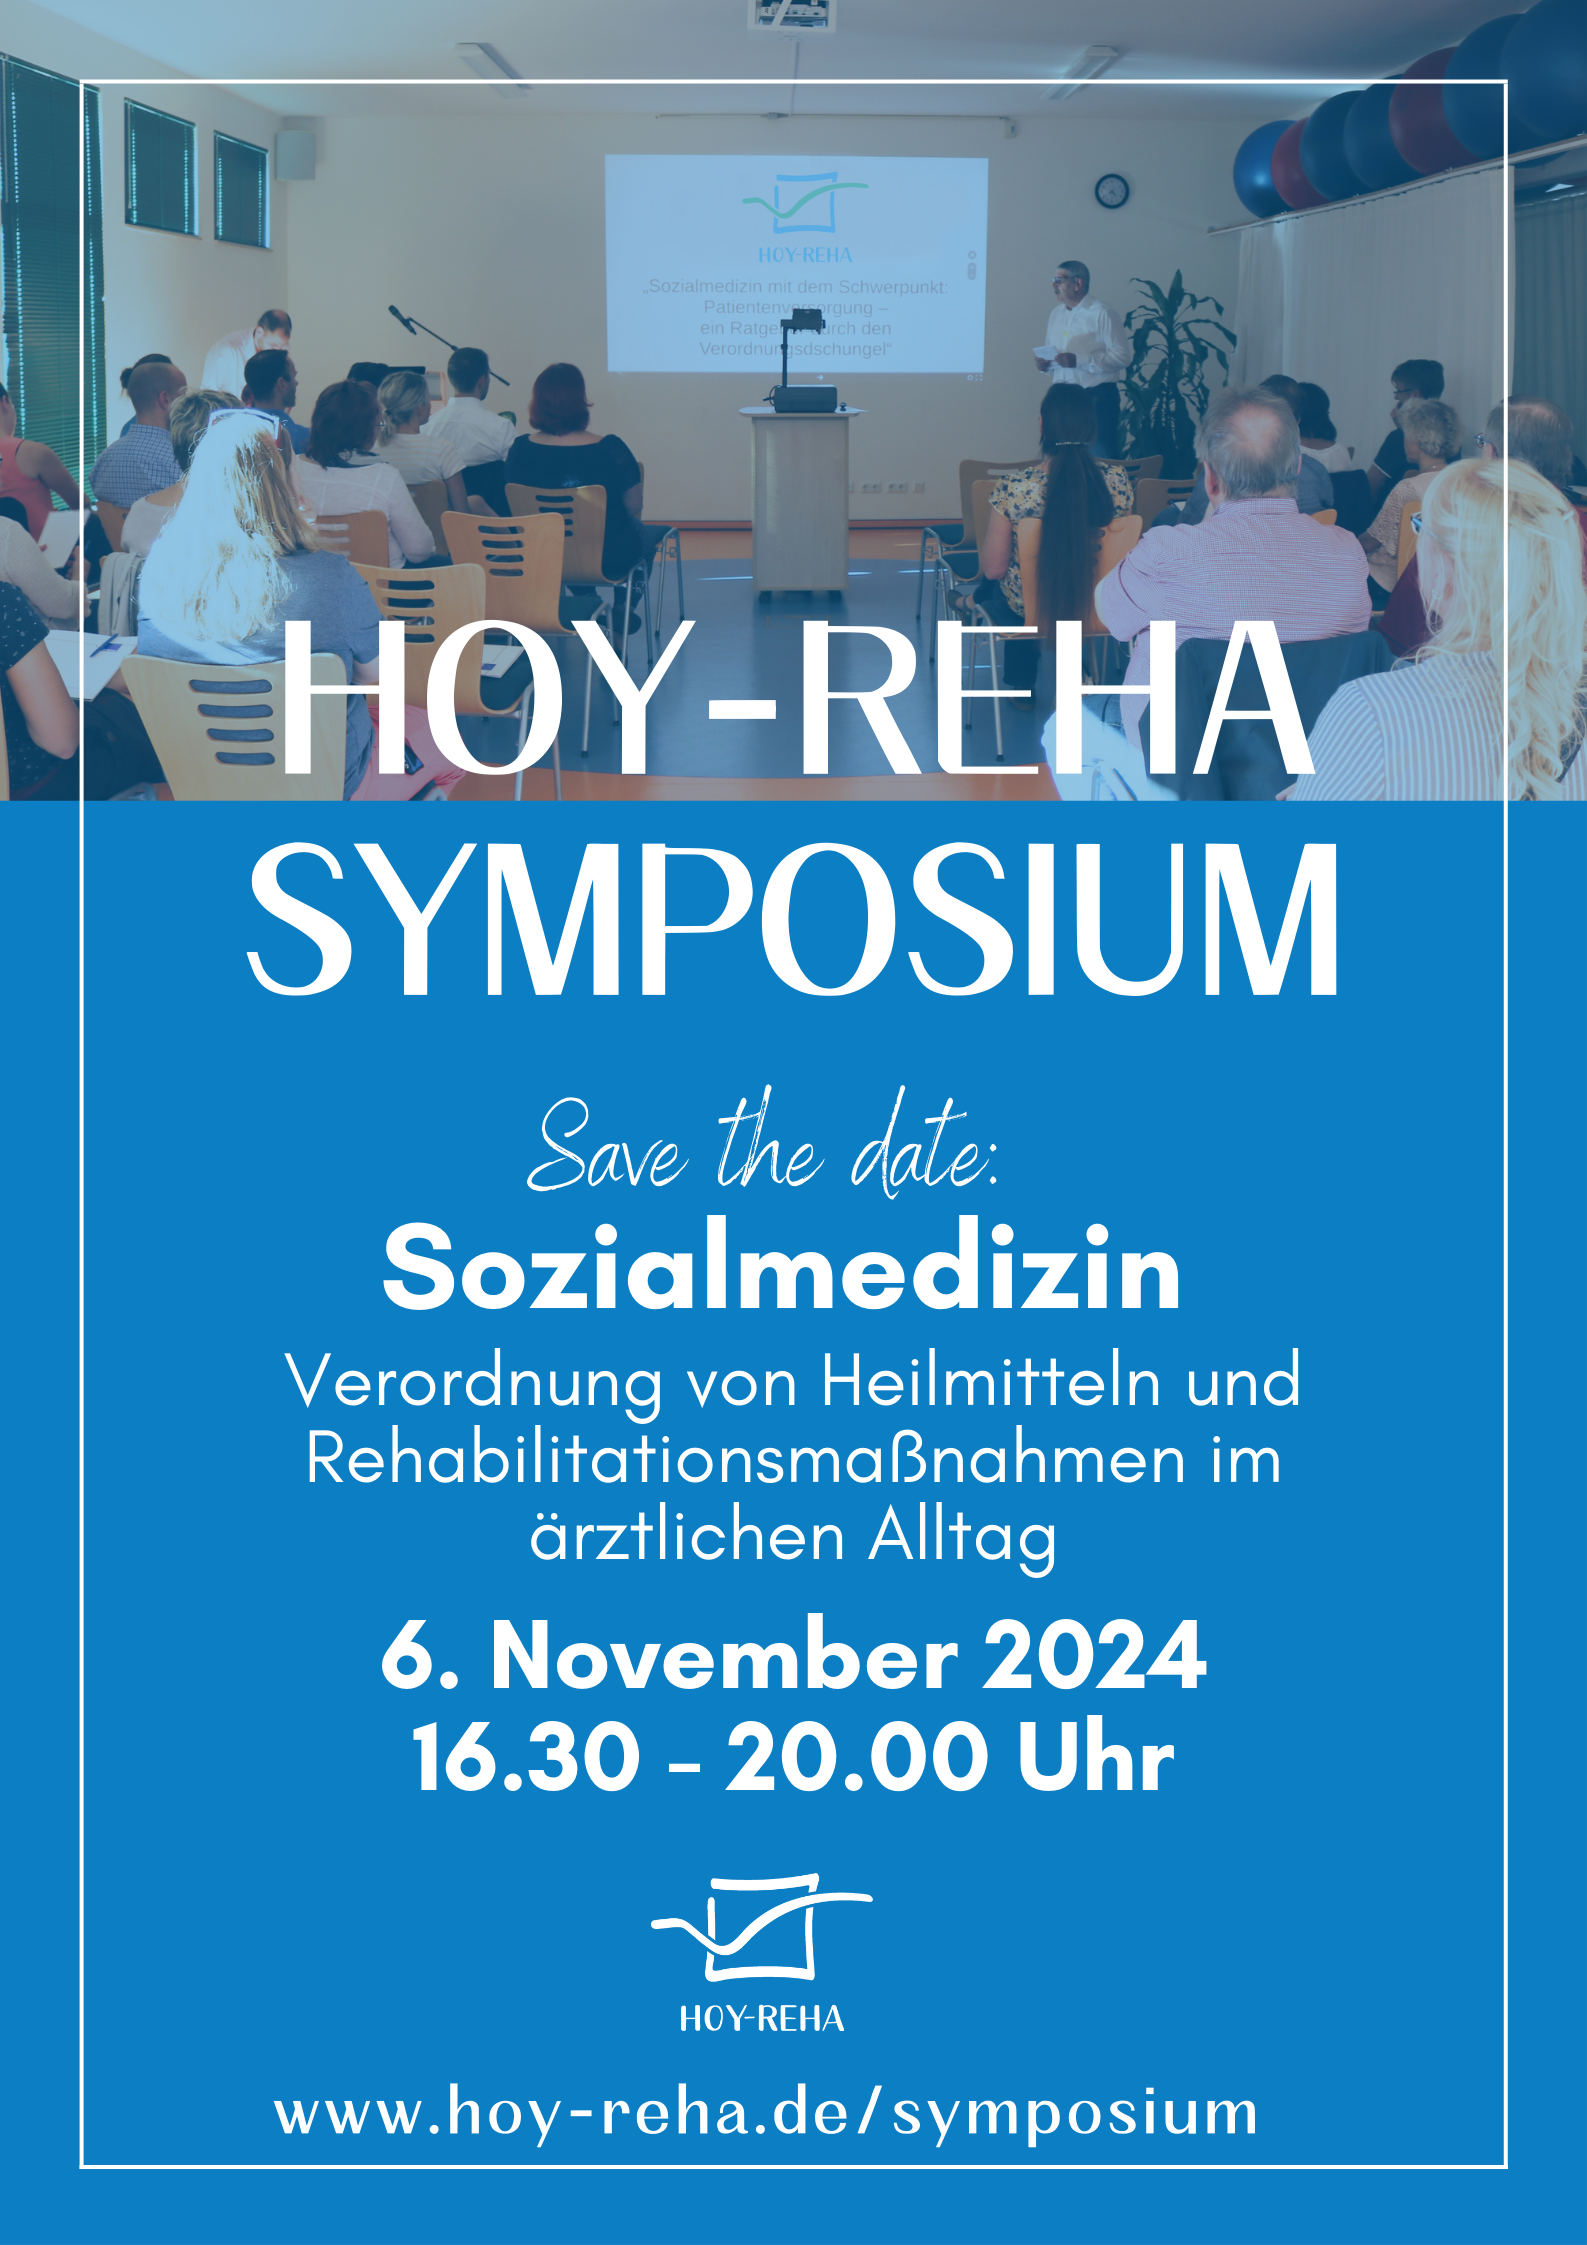 Symposium HOY-REHA Hoyerswerda